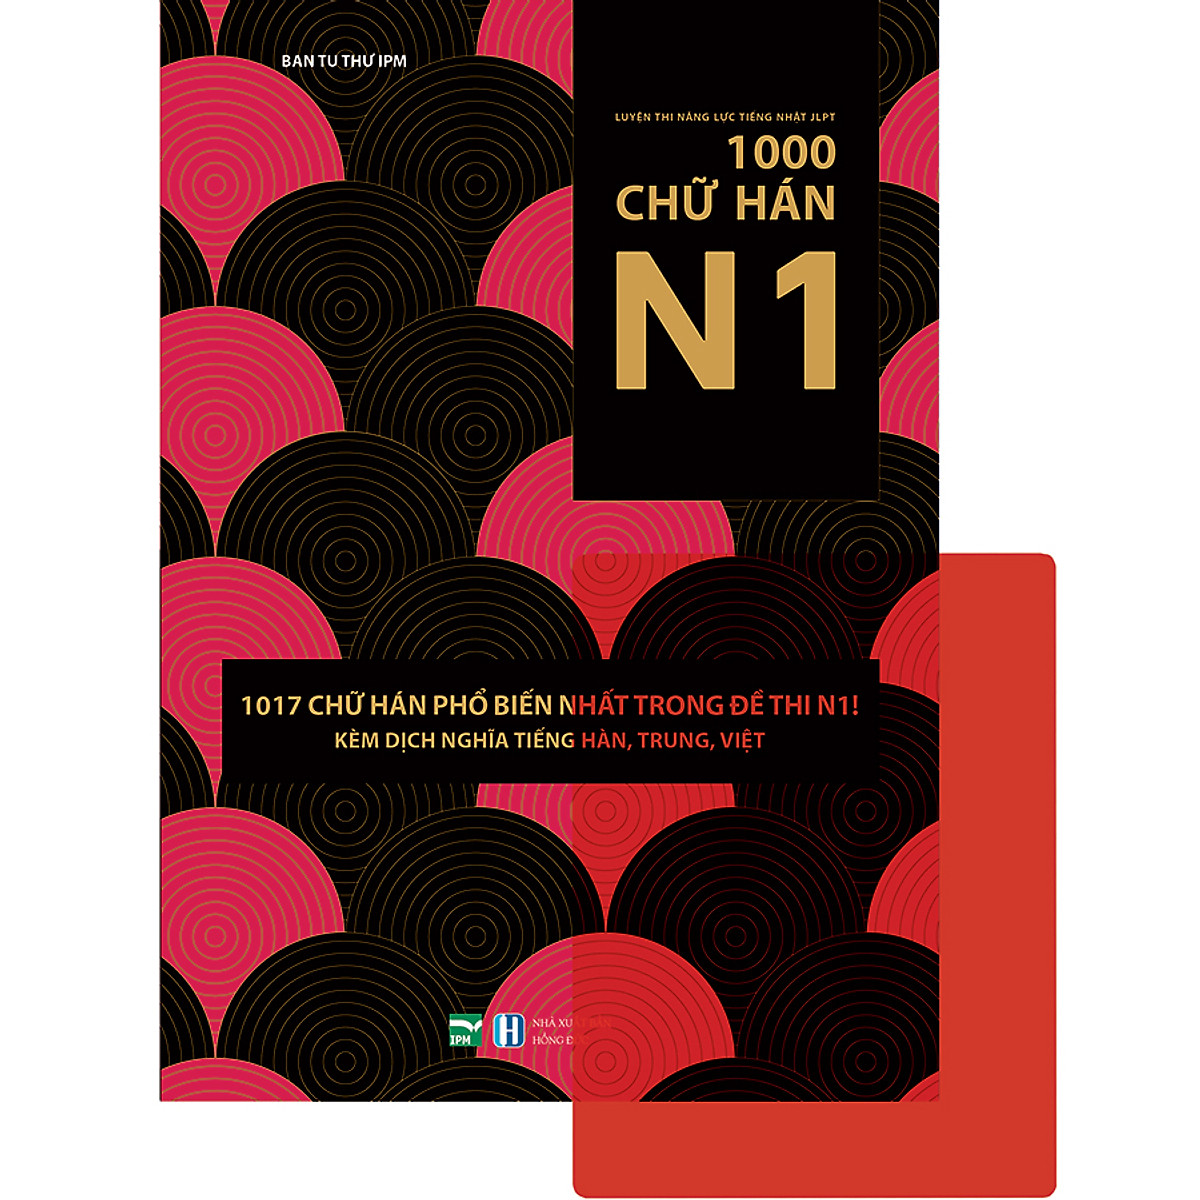 Luyện Thi Năng Lực Tiếng Nhật JLPT-1000 Chữ Hán N1 (Tặng Kèm 1 Card Đỏ Trong Suốt)